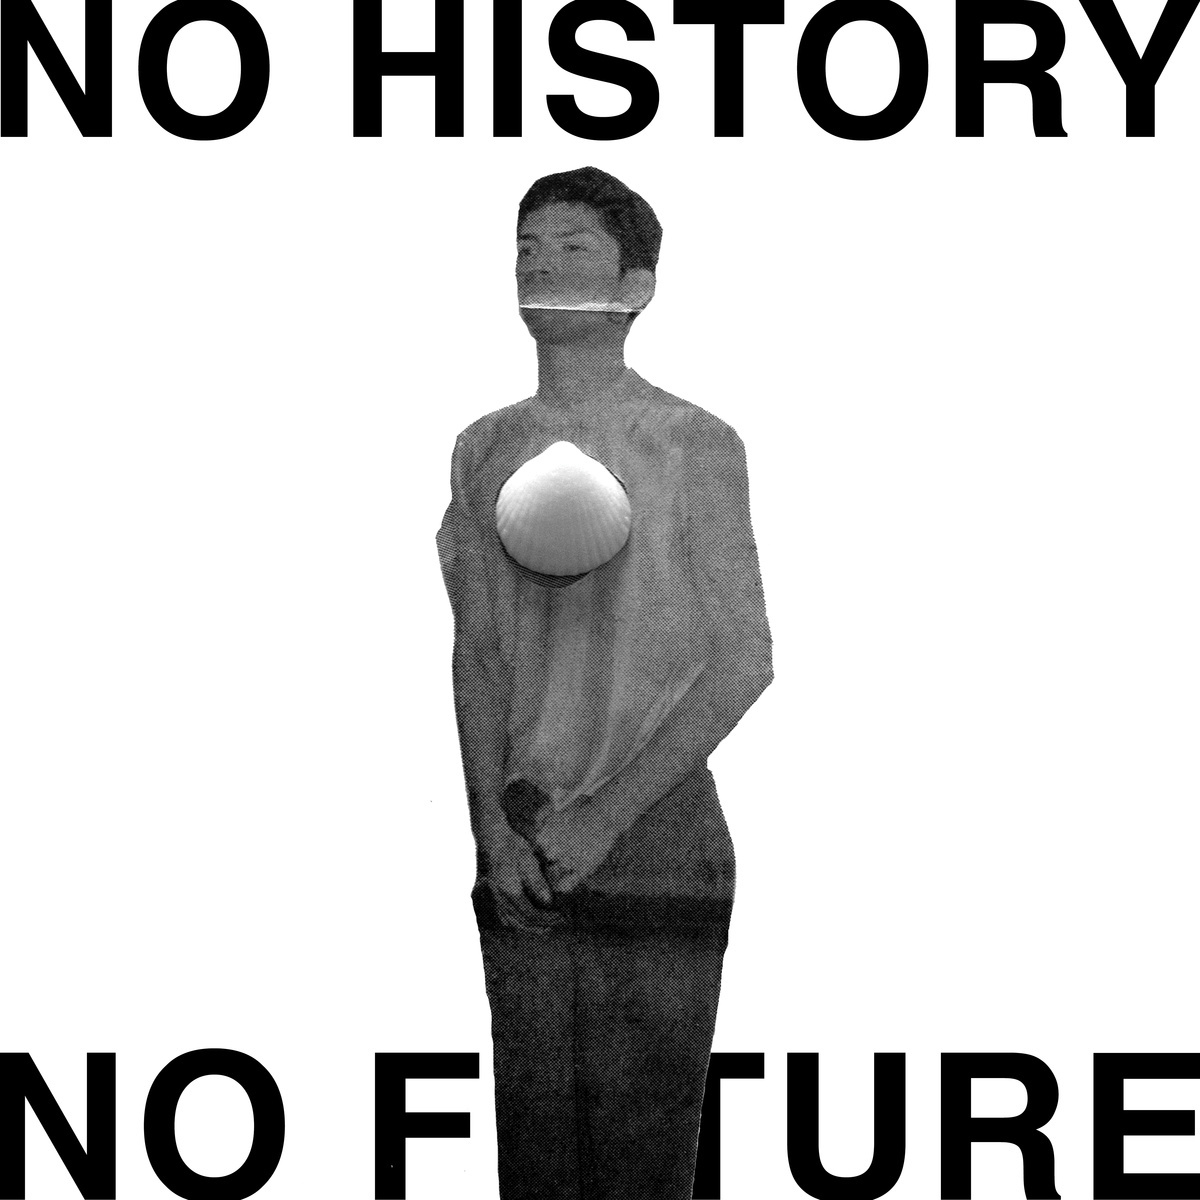 Bandcamp pick of the week: Jean-Louis Huhta - No History No Future